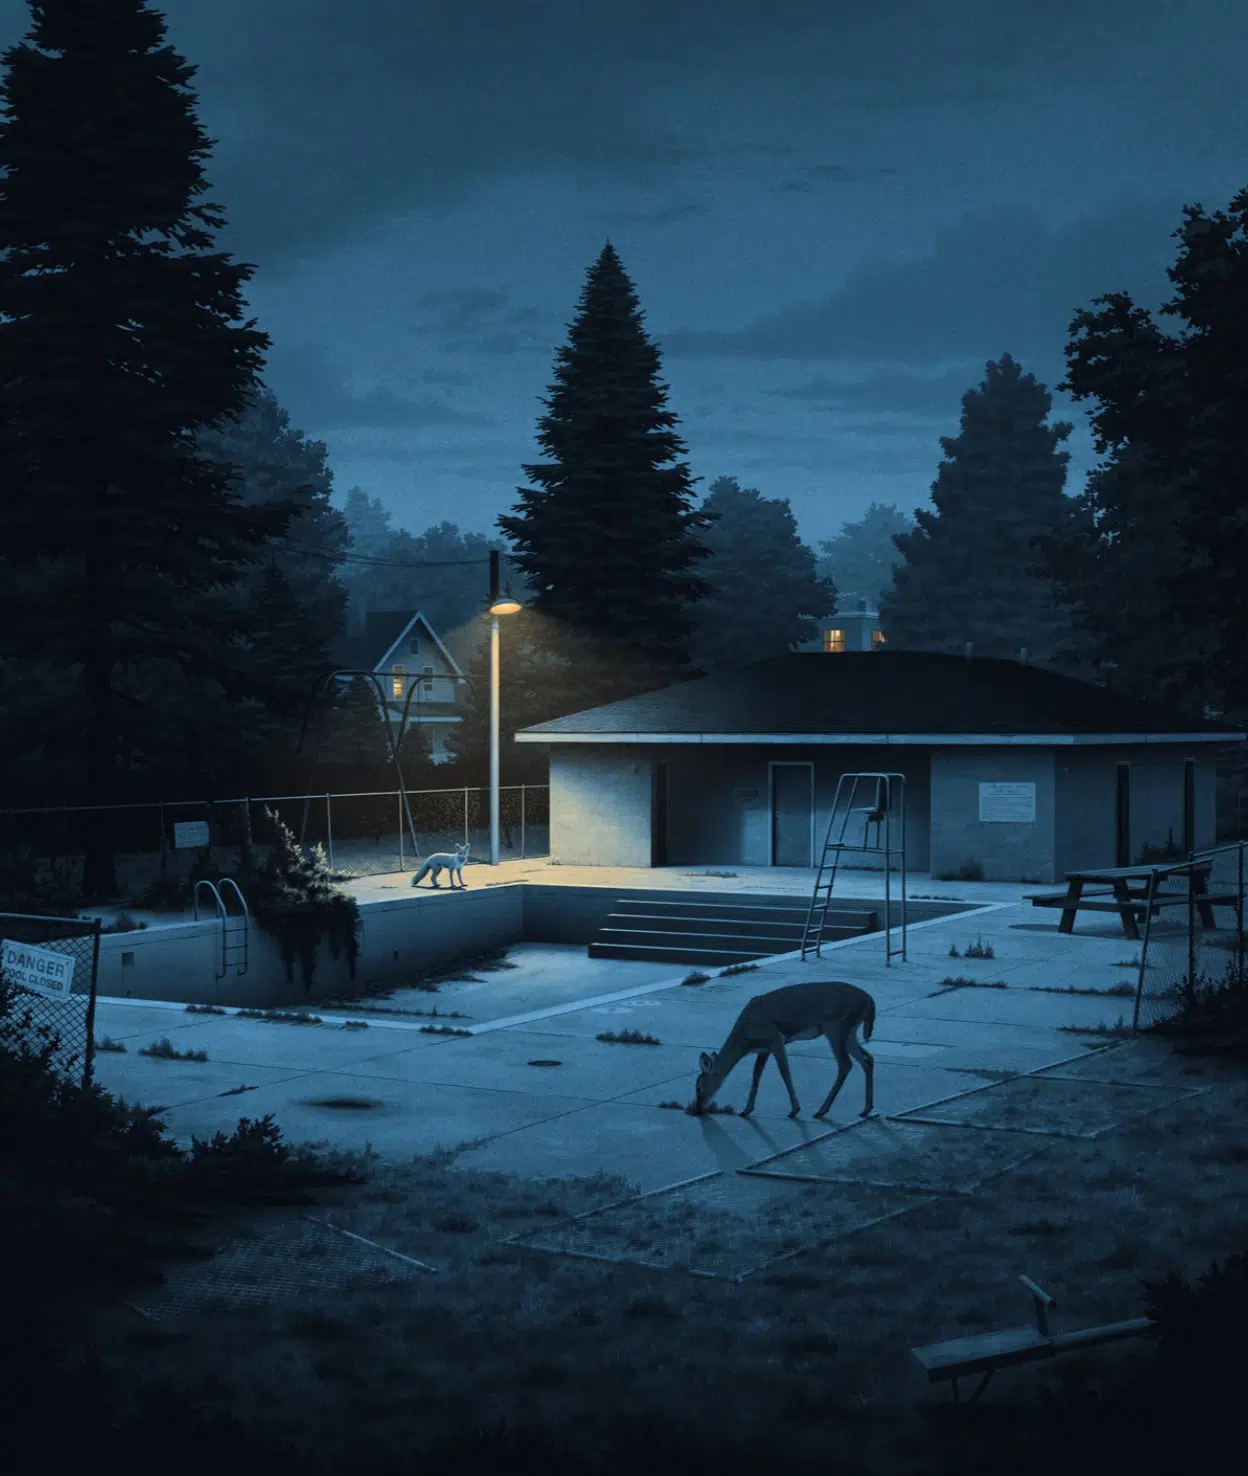 nicholas moegly ilustraciones nostalgicas casa abandonada con piscina abandonada y nostalgia animal salvaje